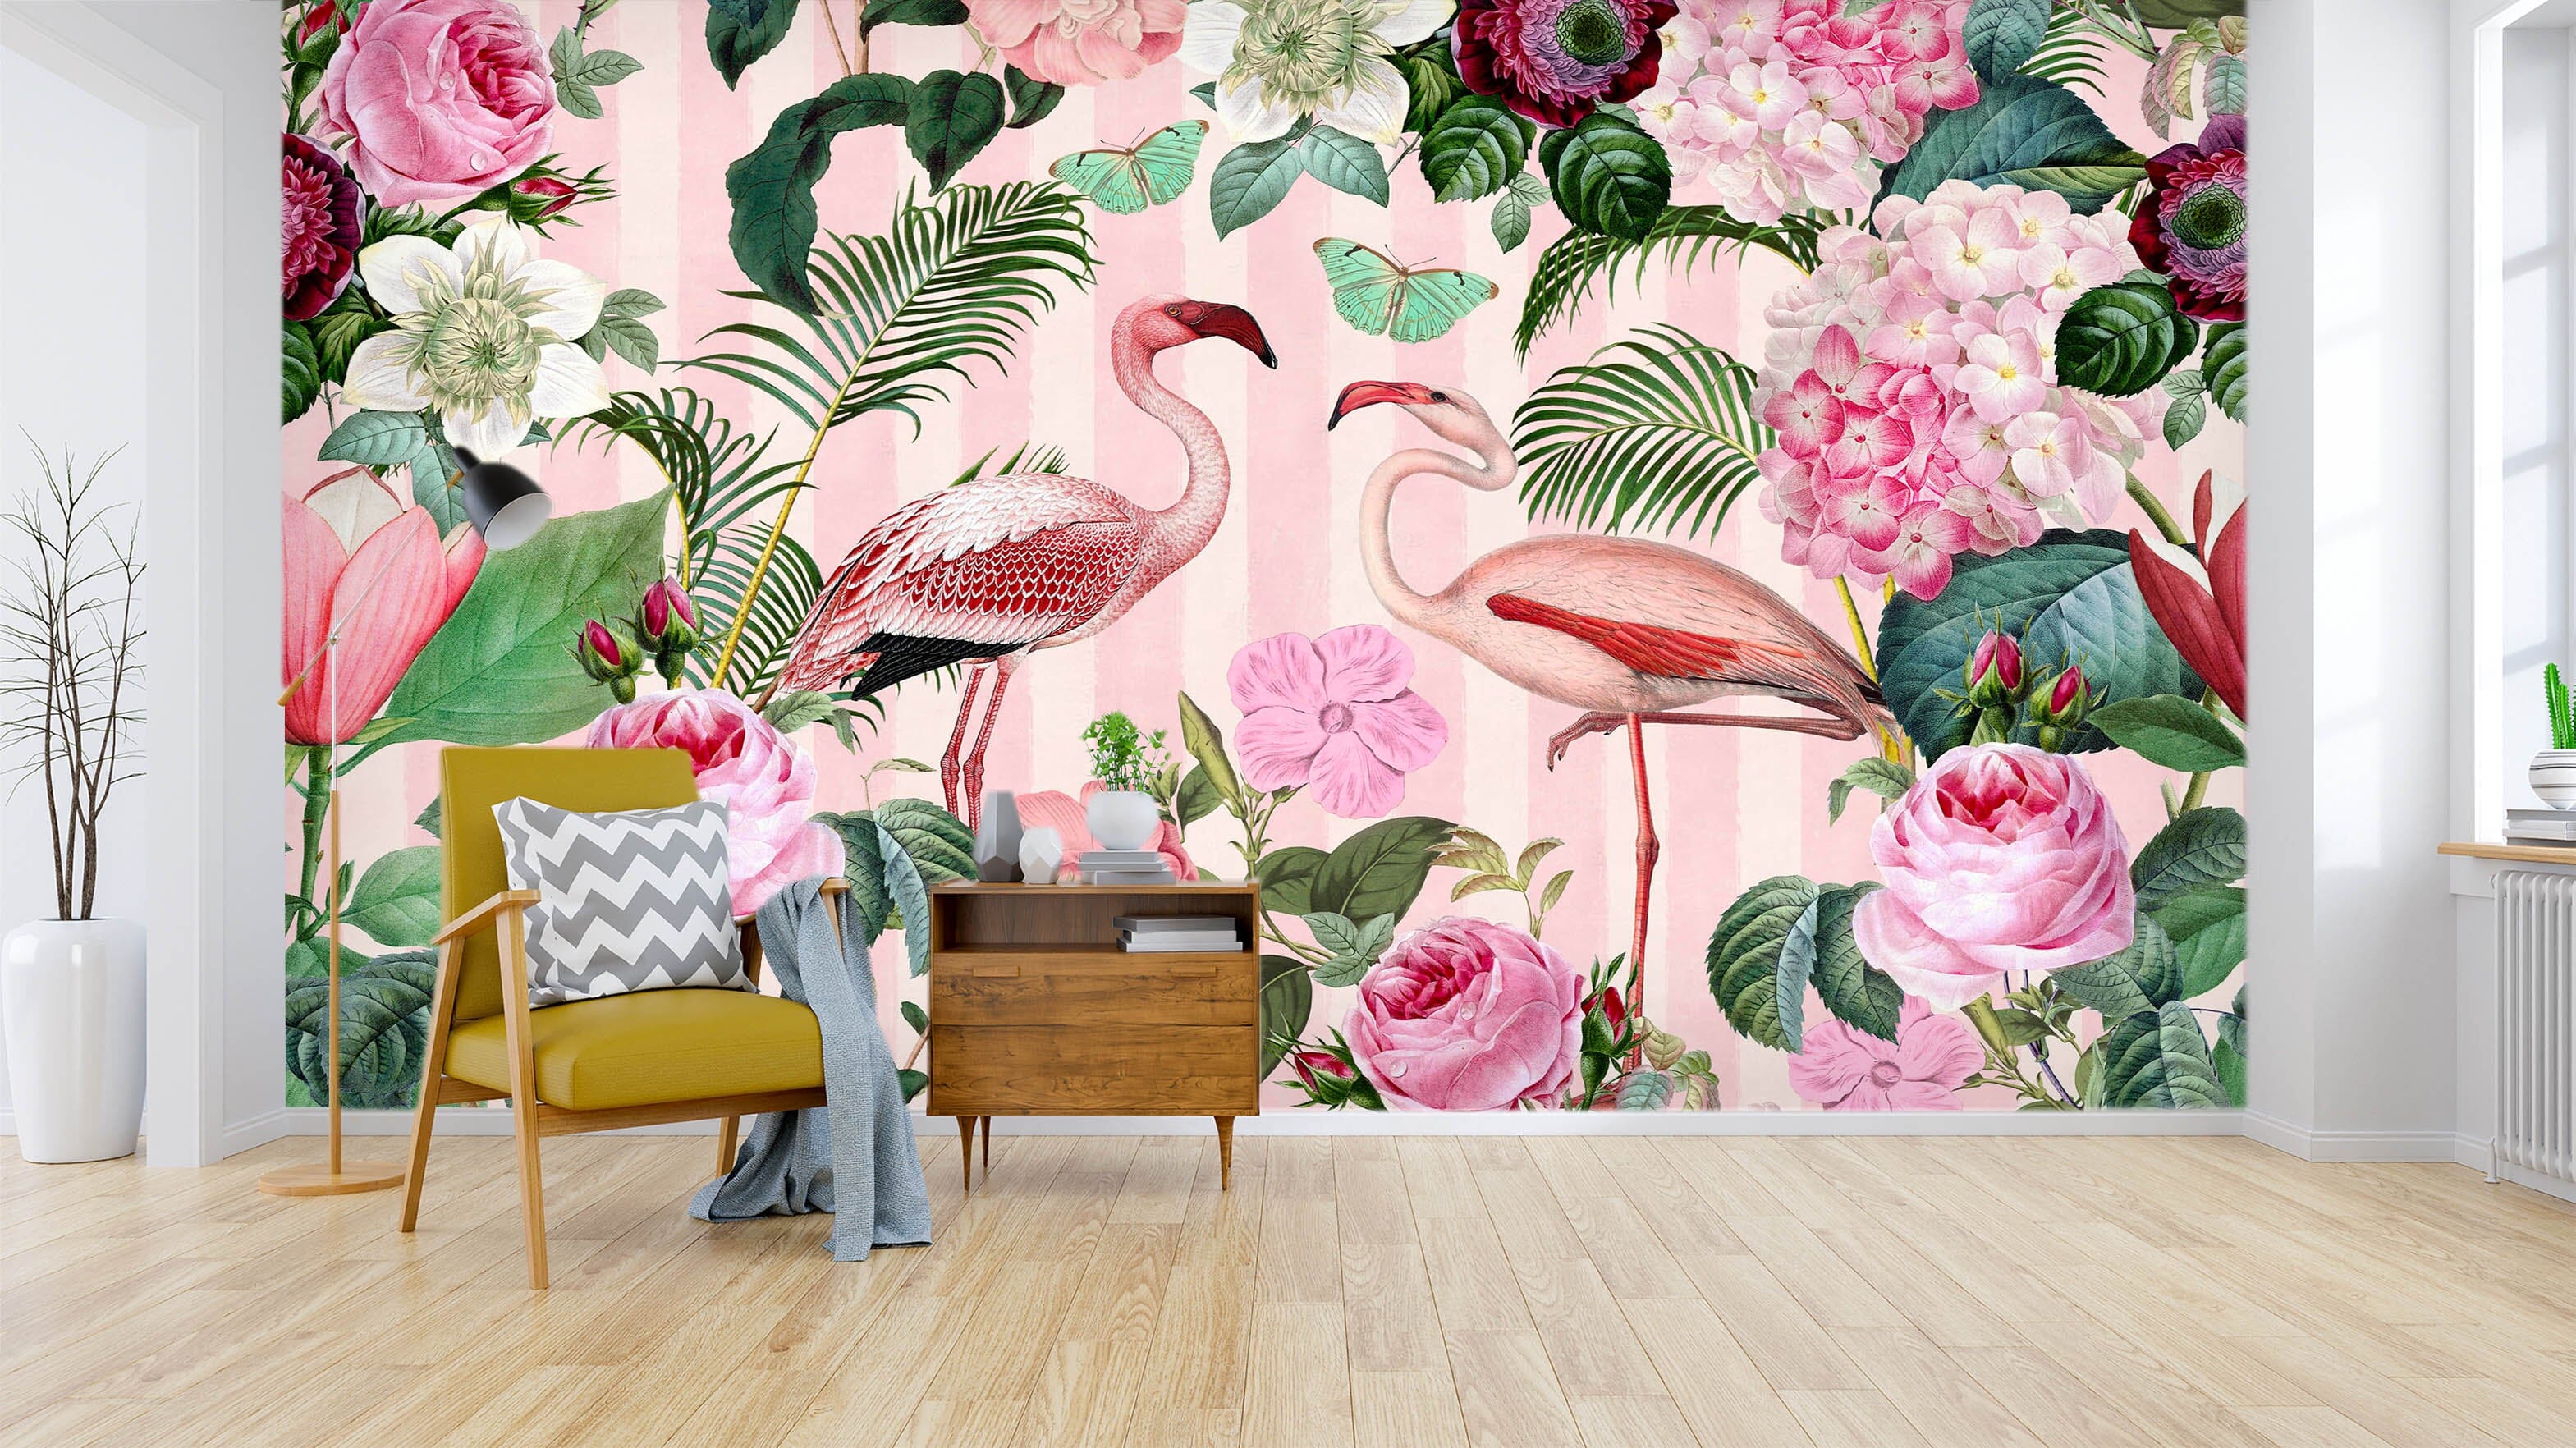 3D Flamingo Forest 1409 Andrea haase Wall Mural Wall Murals Wallpaper AJ Wallpaper 2 